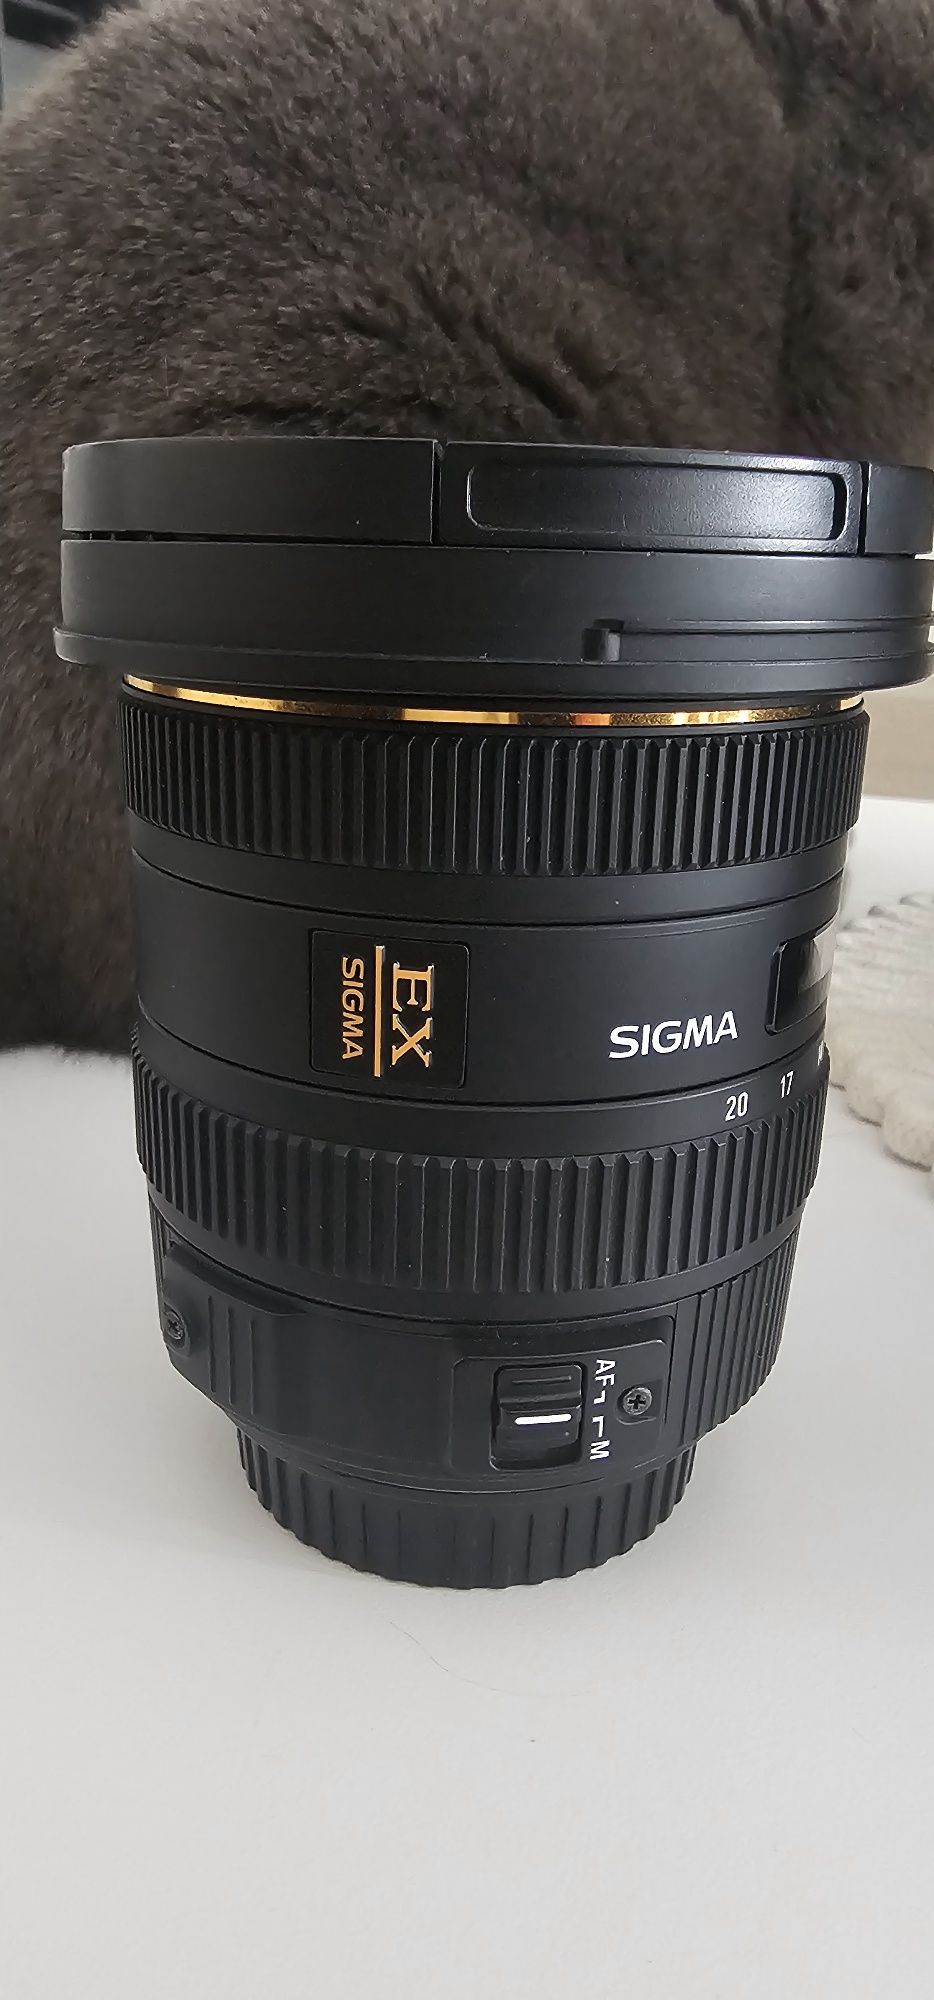 Sigma 10 20 f3,5 montura canon, ultra wide